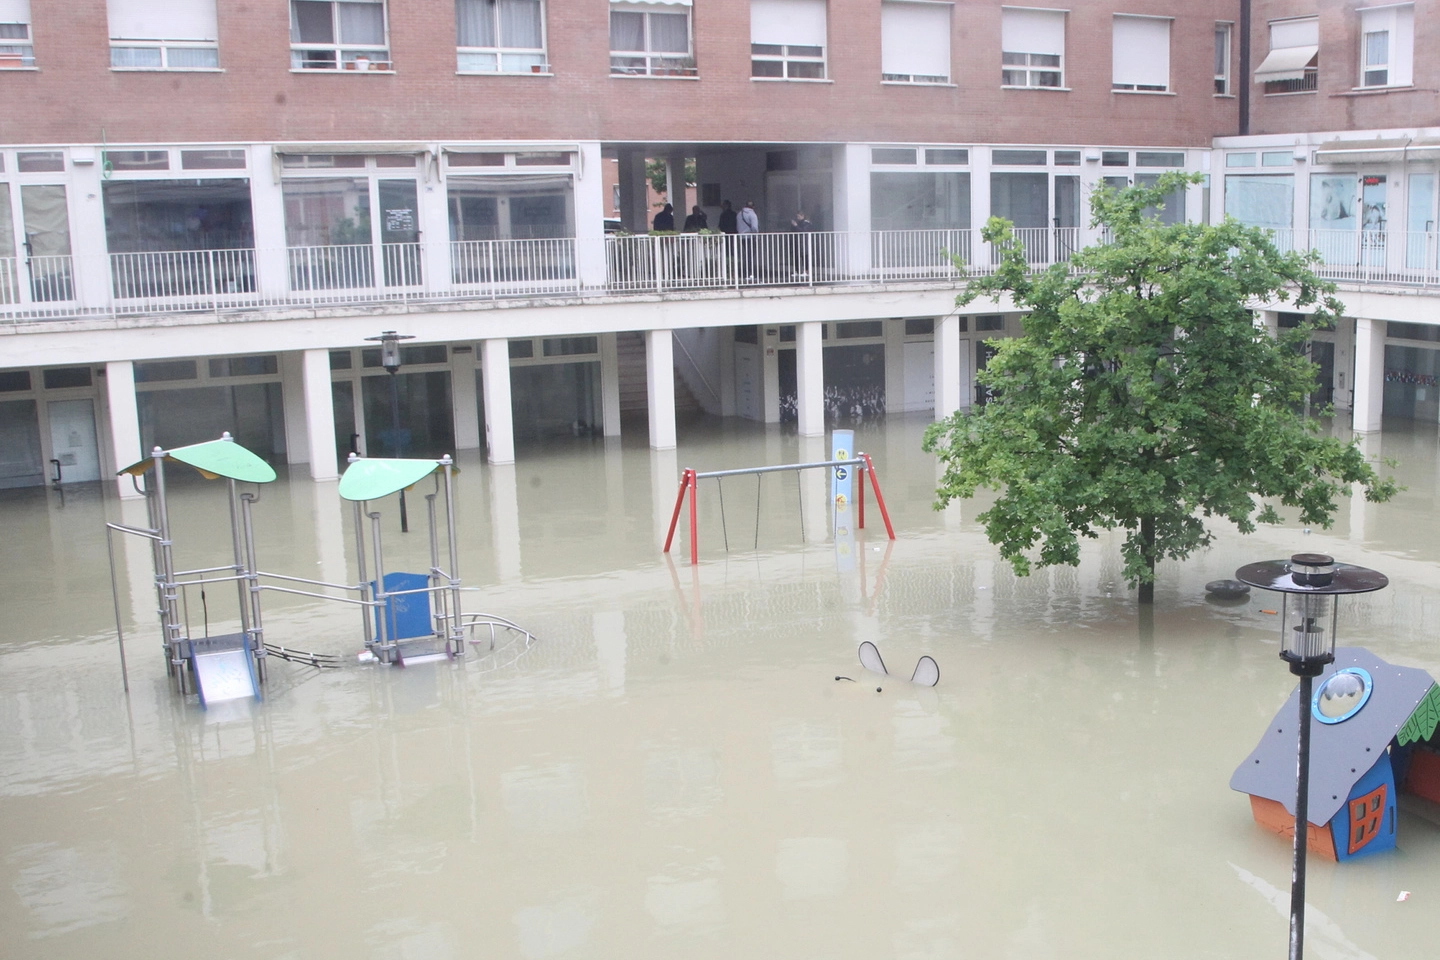 Un’immagine del quartiere Zuccherificio sommerso dall’acqua del Savio il 16 maggio